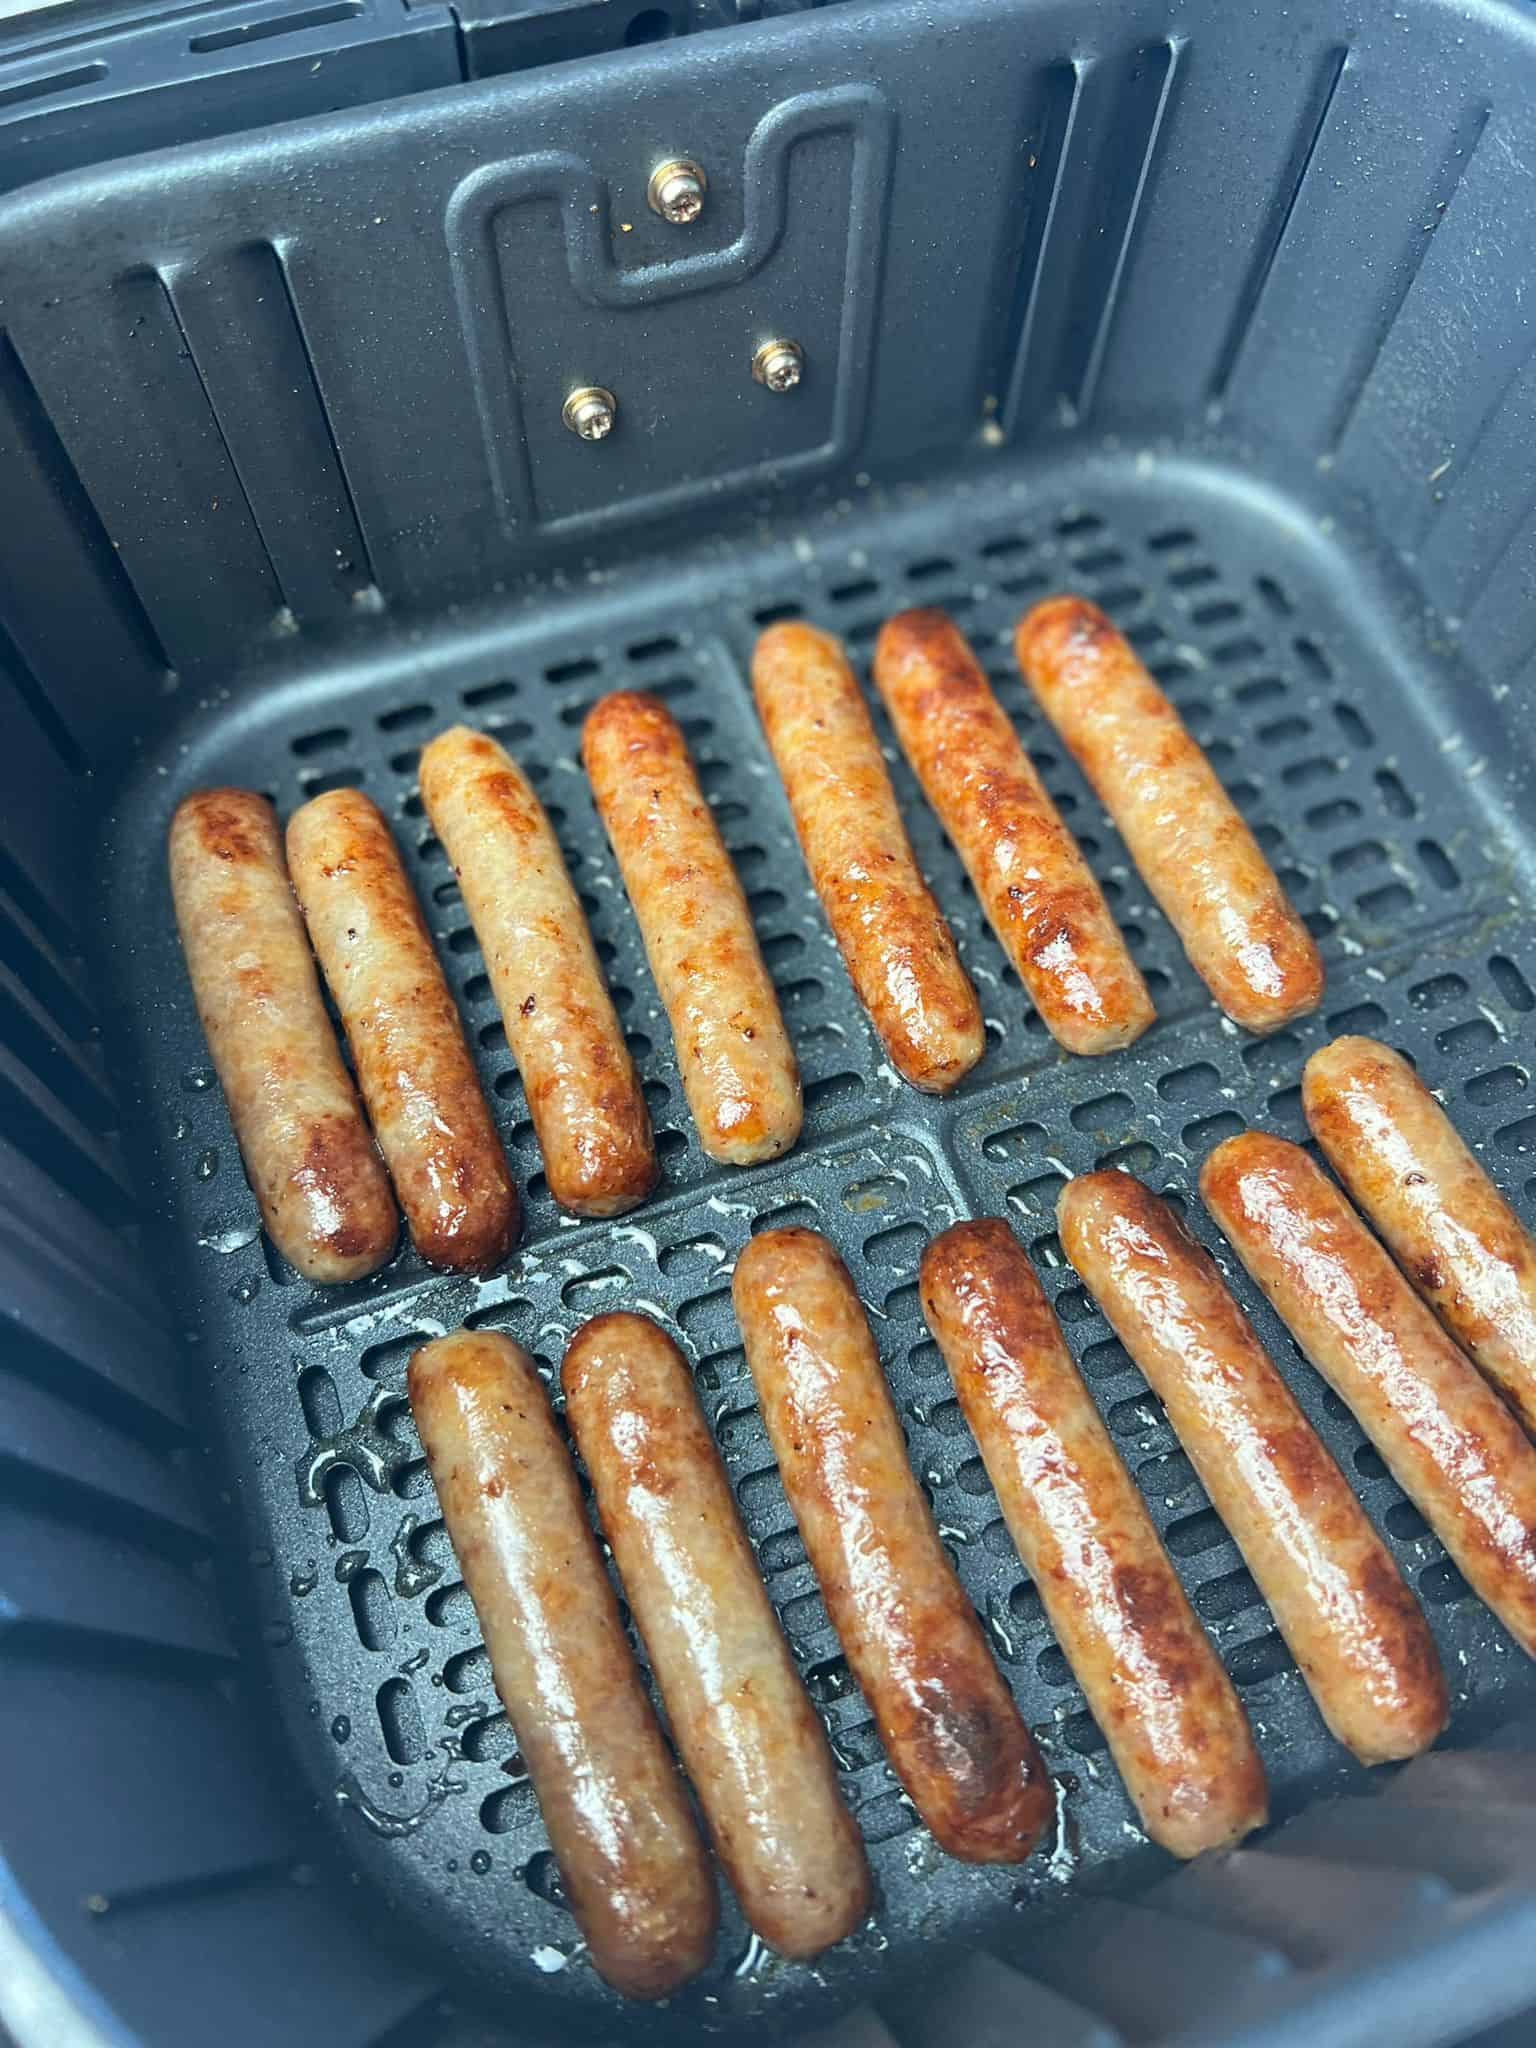 breakfast sausages in air fryer.